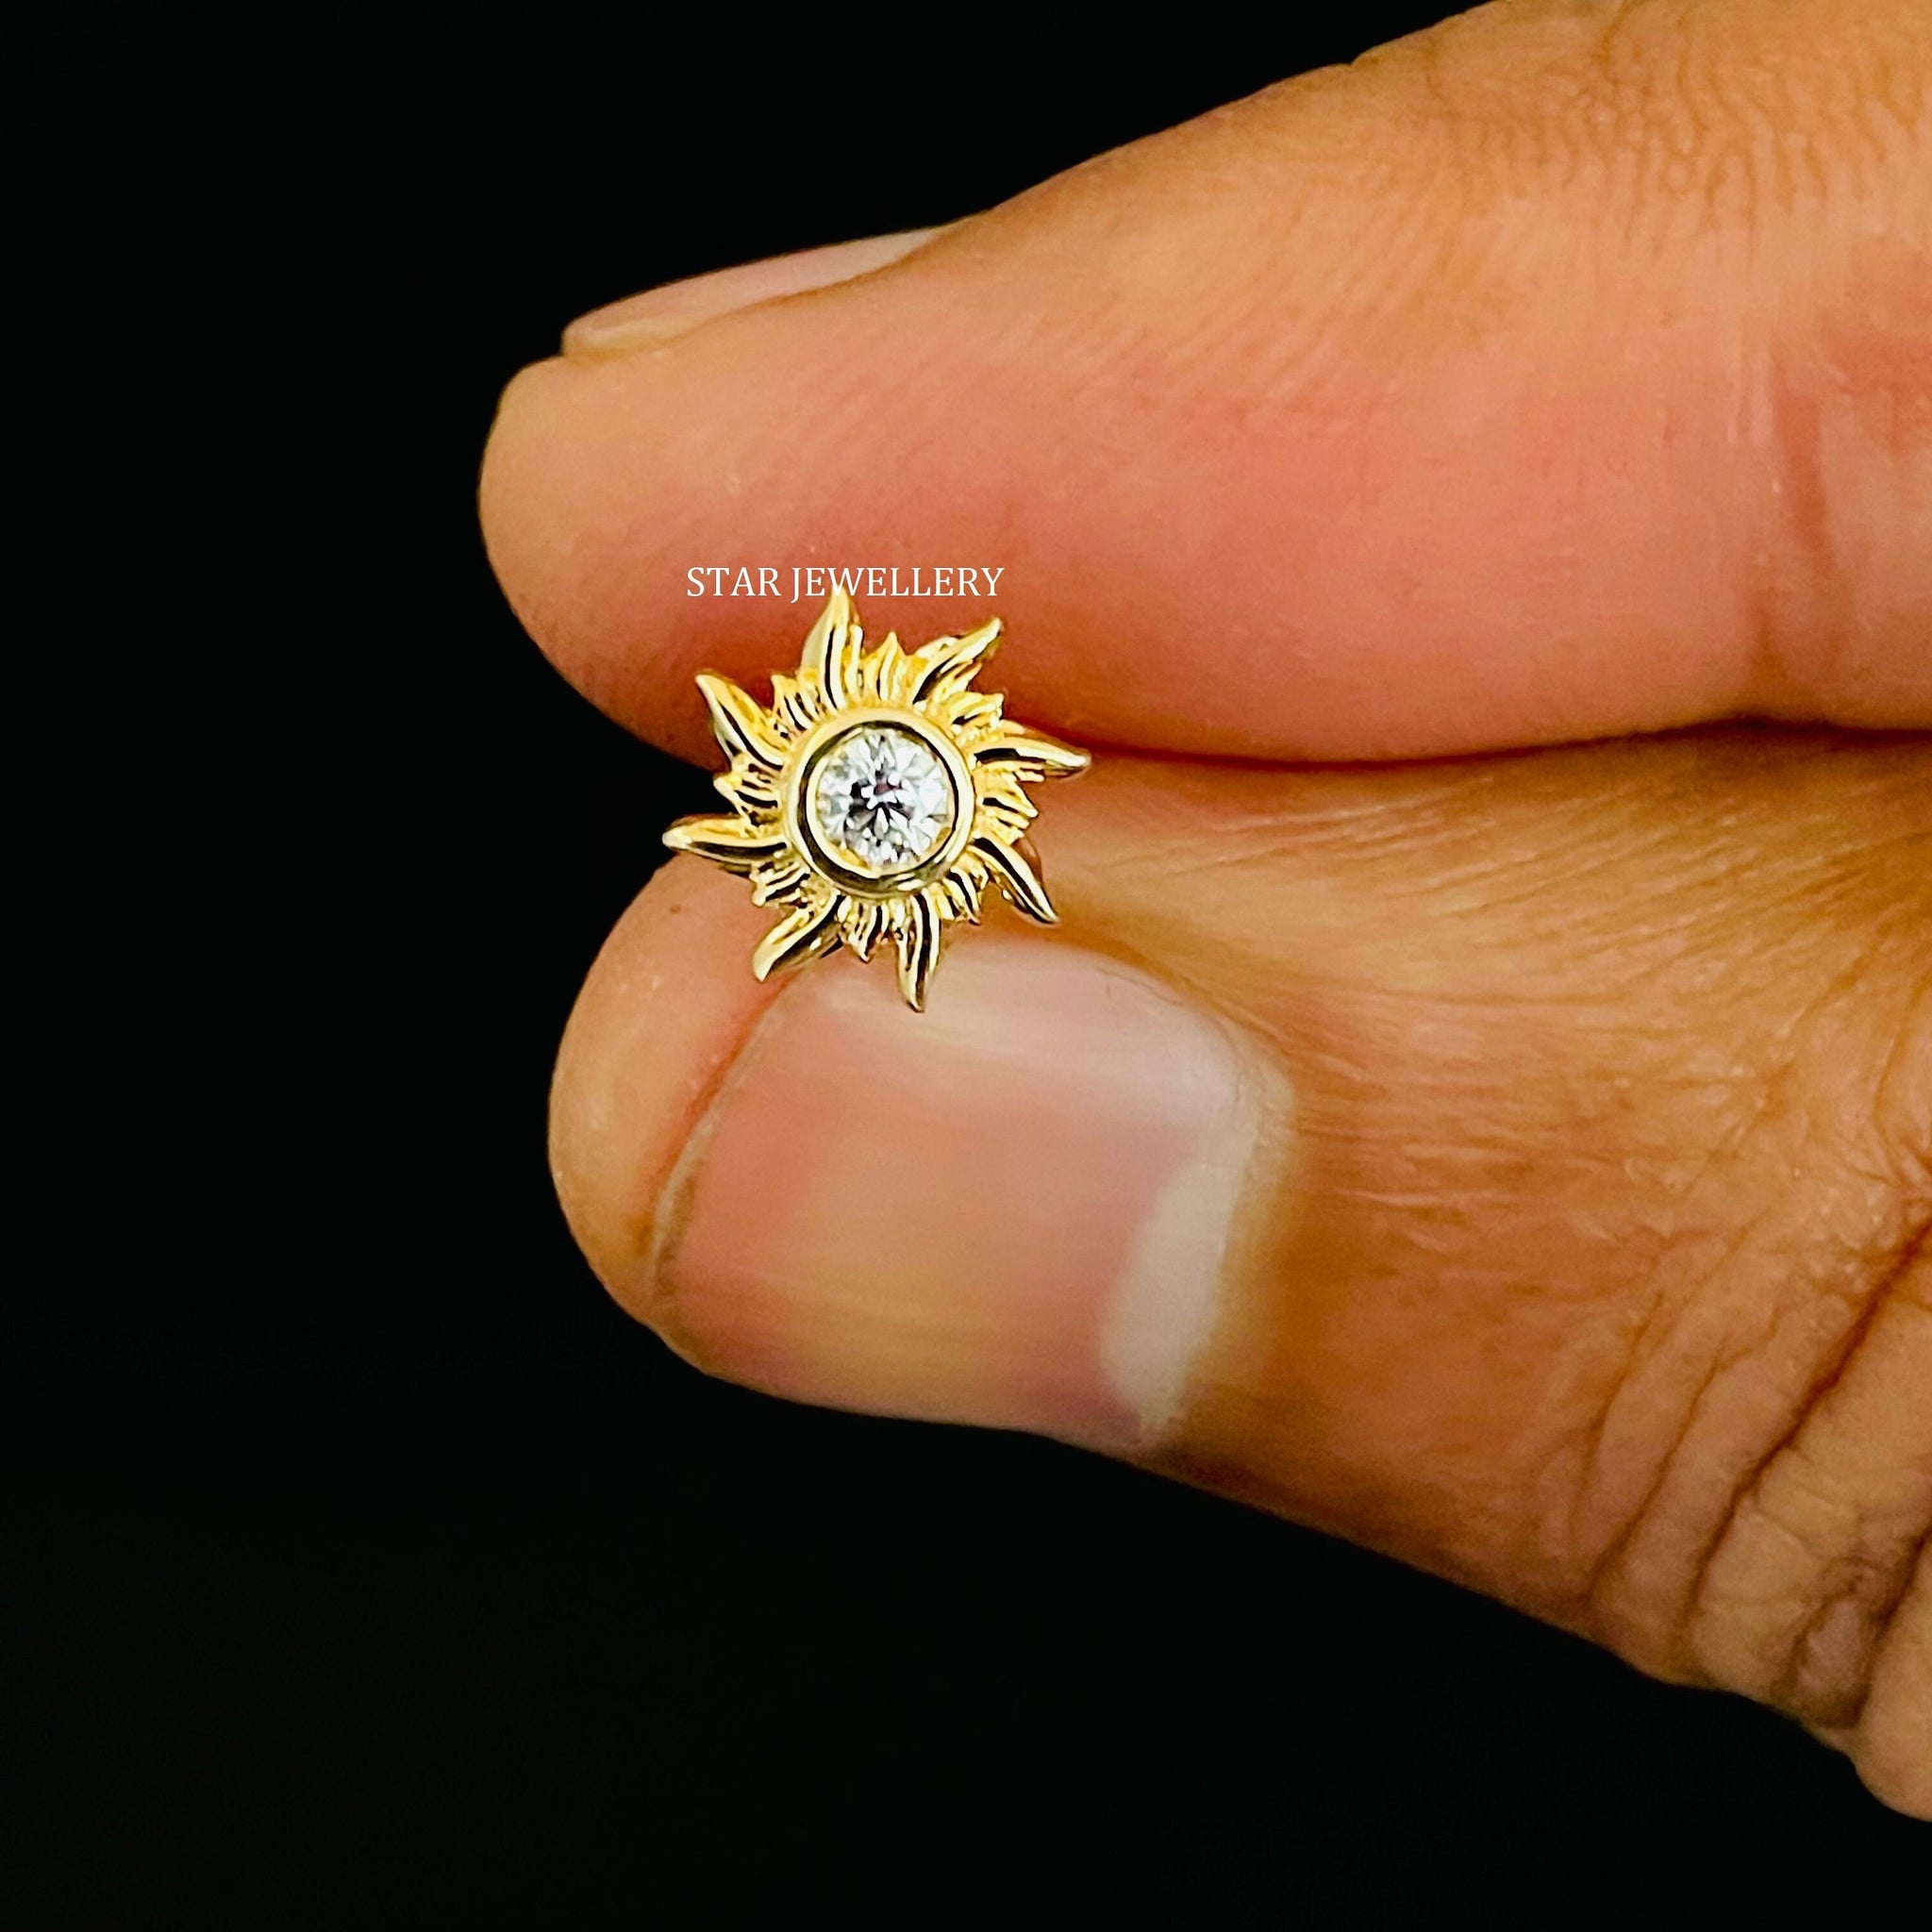 Véritable diamant naturel Sun Piercing, Sun Fire Stud Piercing avec 14K Solid Gold, Diamond starburst Piercing pour Tragus, Conch, Lobe, Helix